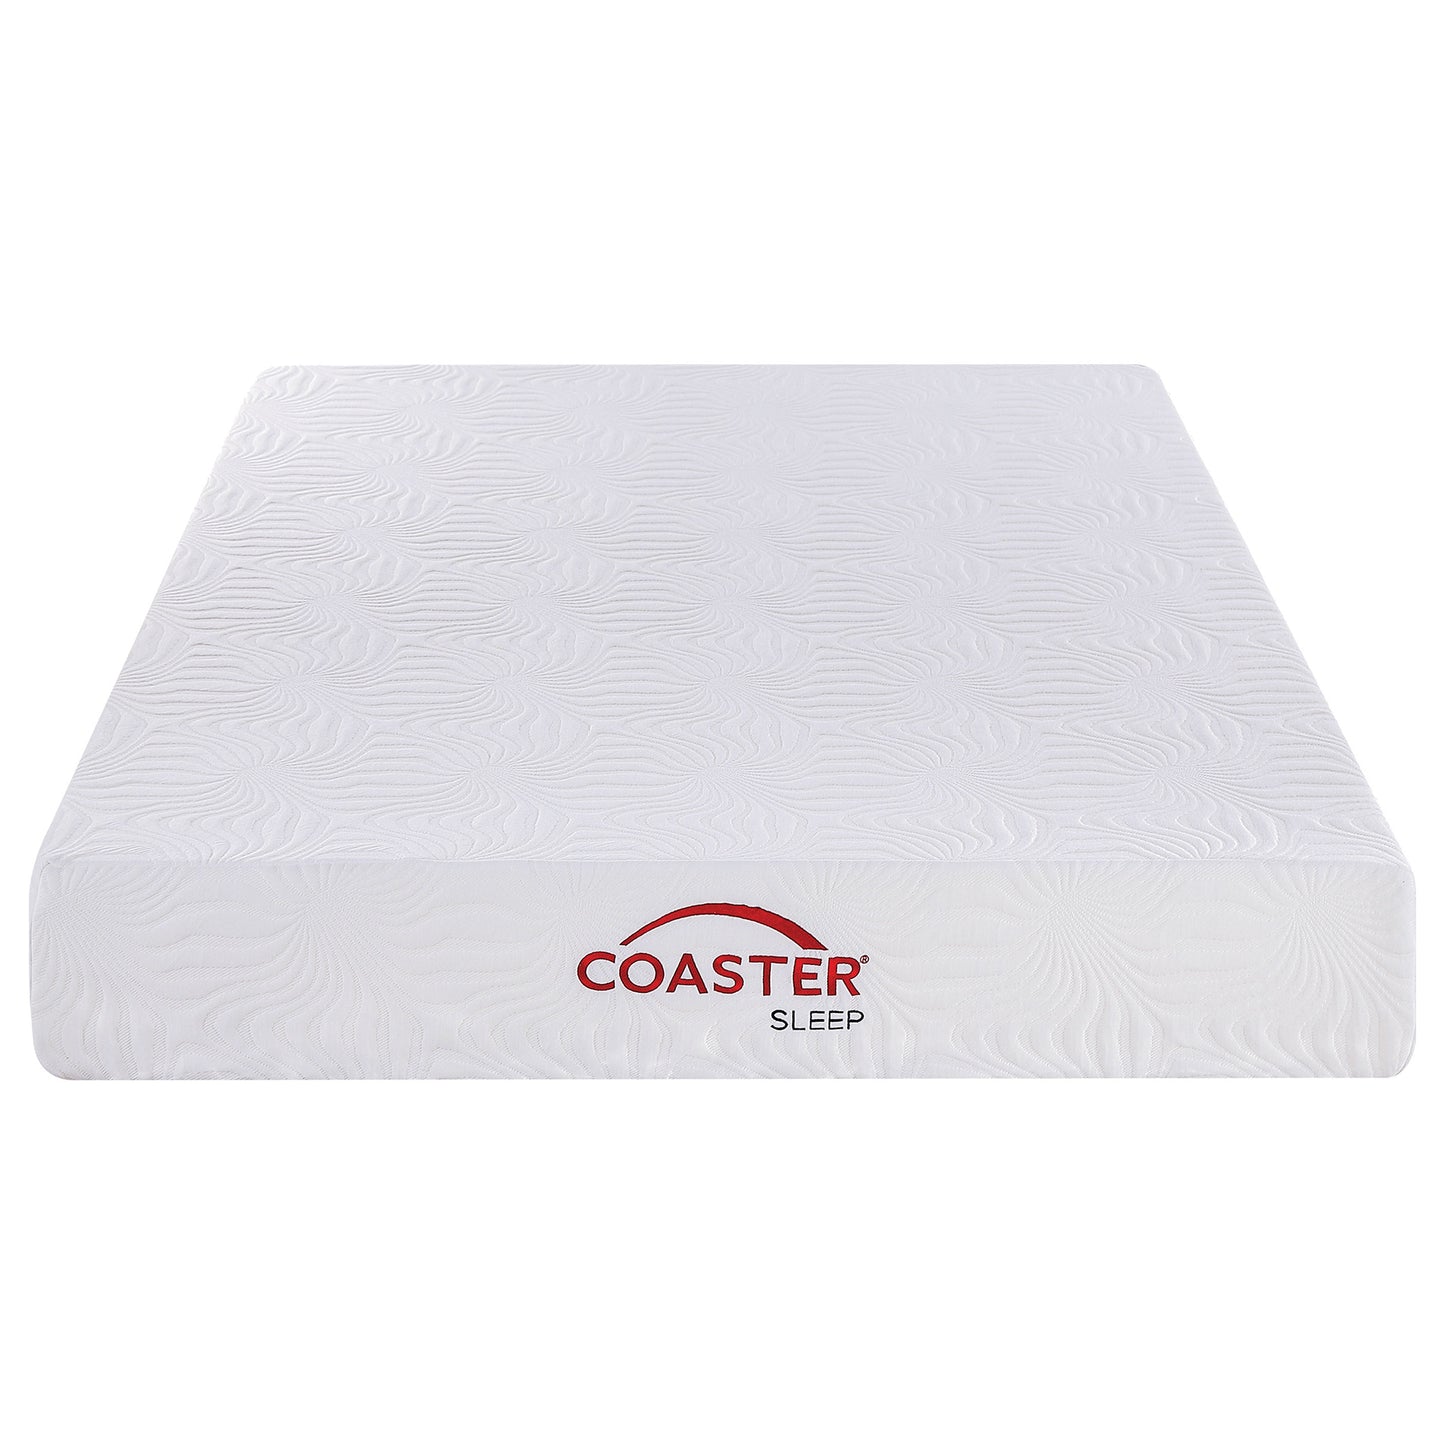 10" twin memory foam mattress